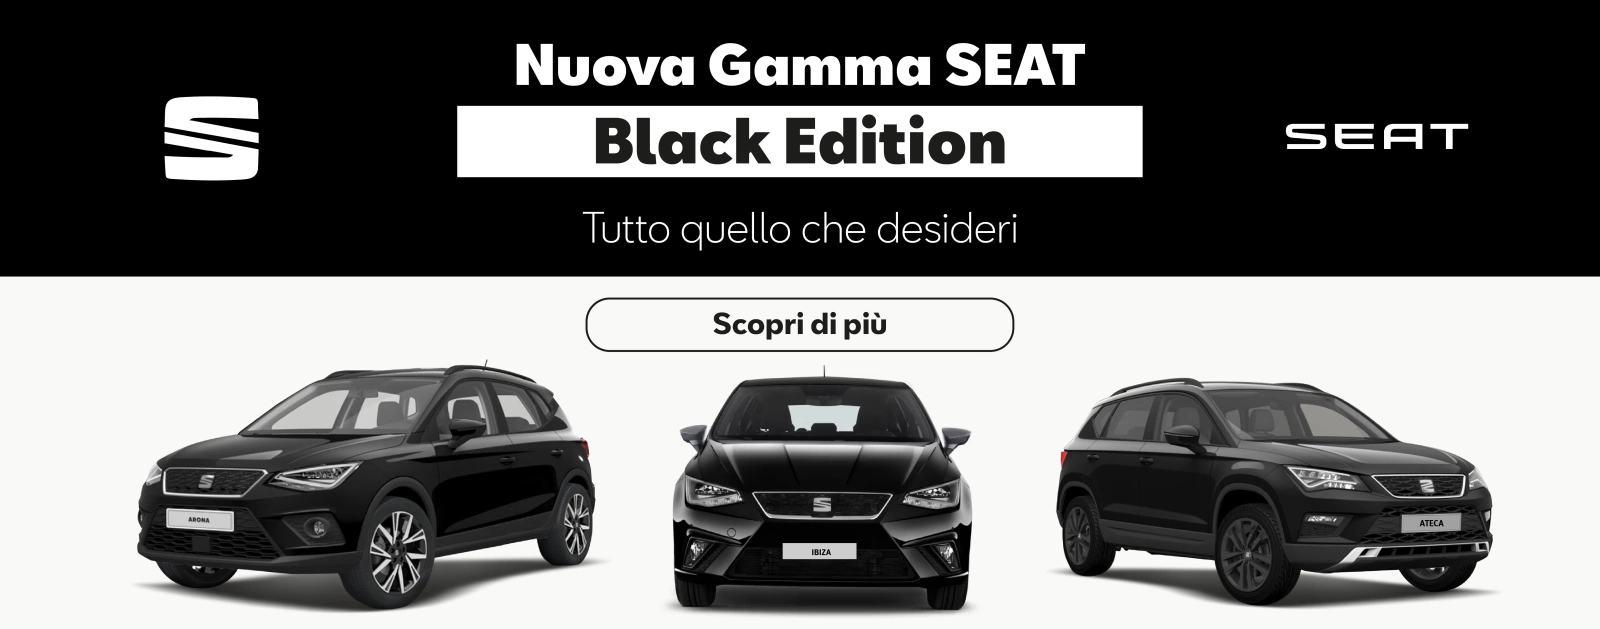 Nuova Gamma SEAT Black Edition